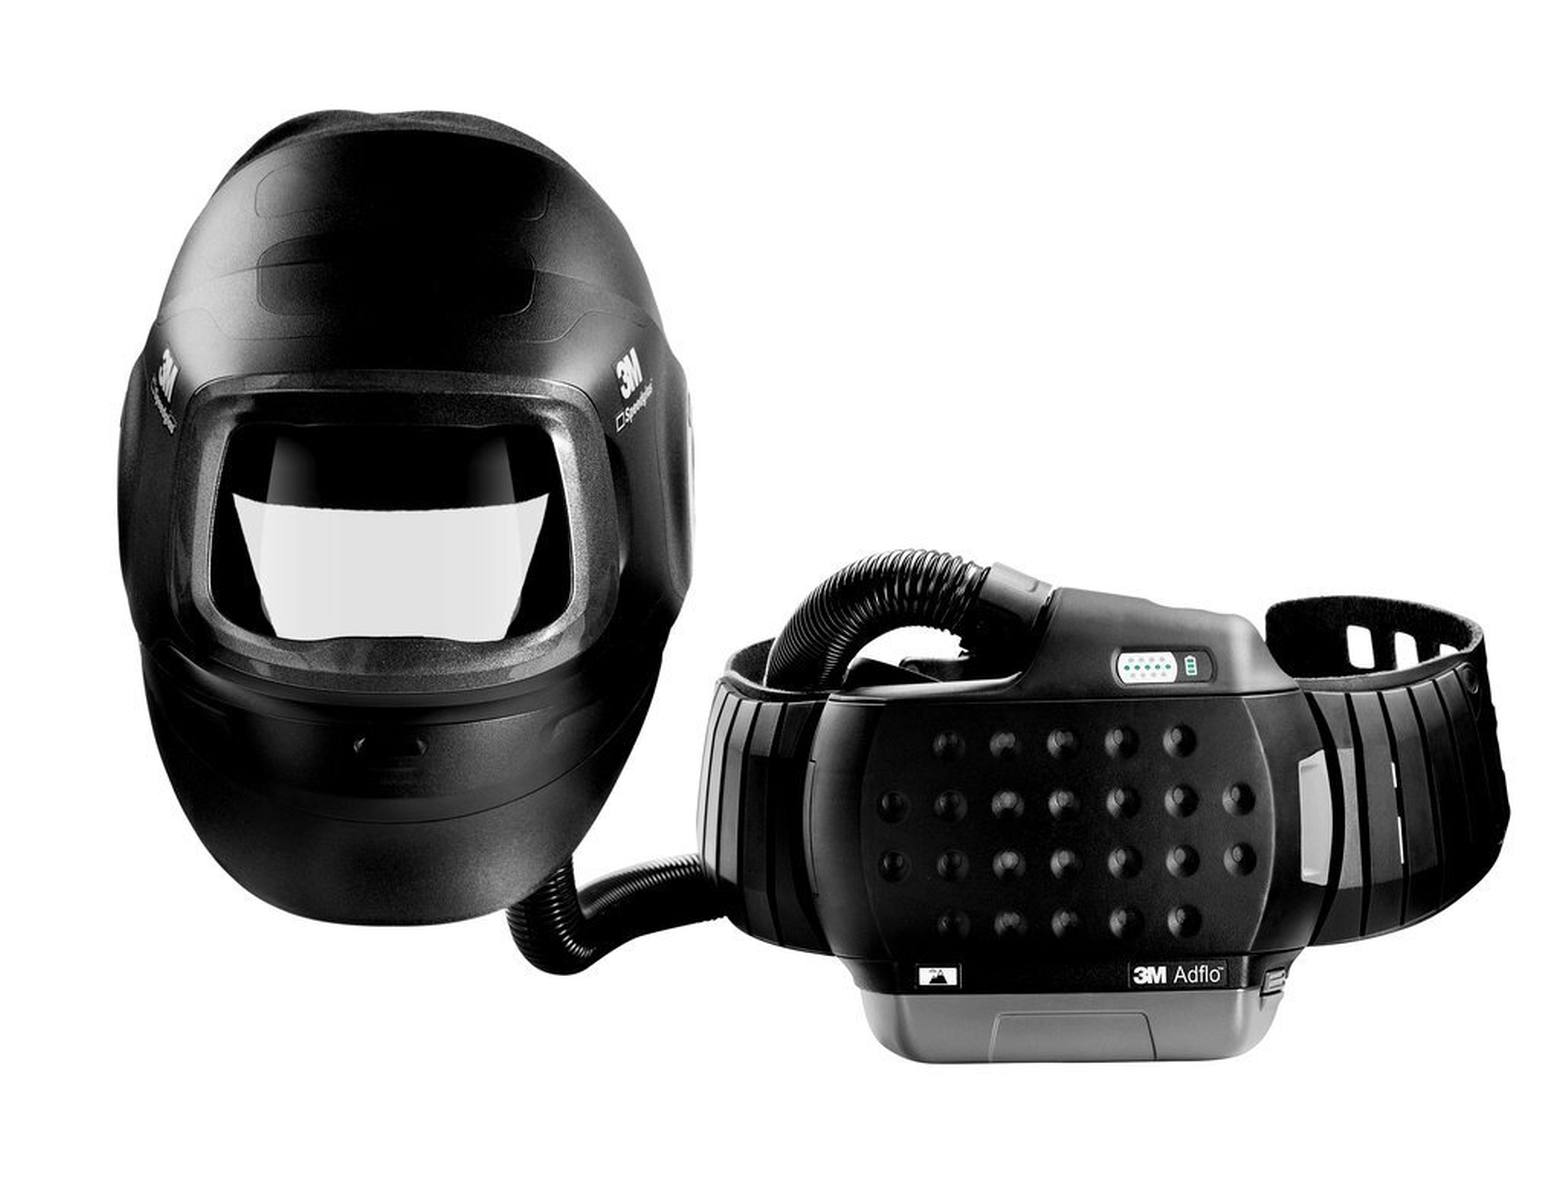 Máscara de soldadura de alto rendimiento 3M Speedglas G5-01 con respirador soplador 3M Adflo, batería de alto rendimiento, juego de inicio de consumibles y bolsa de almacenamiento, sin filtro de soldadura, H617809